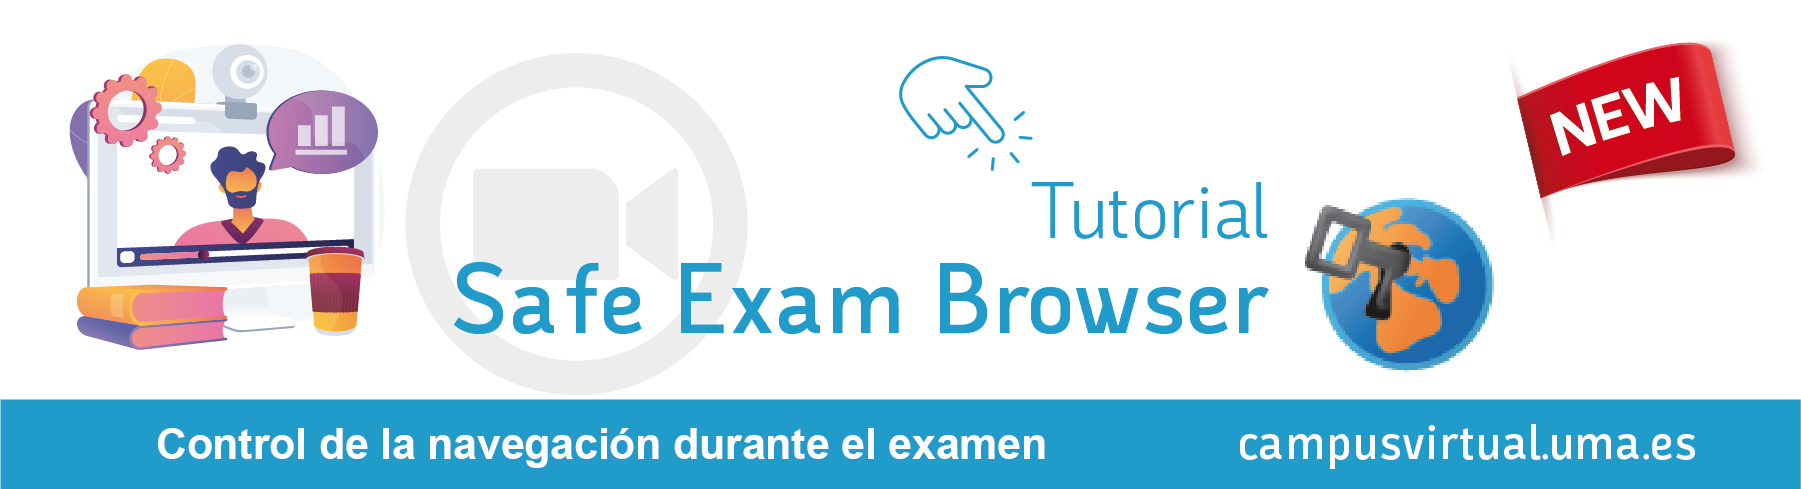 Tutorial safe exam browser